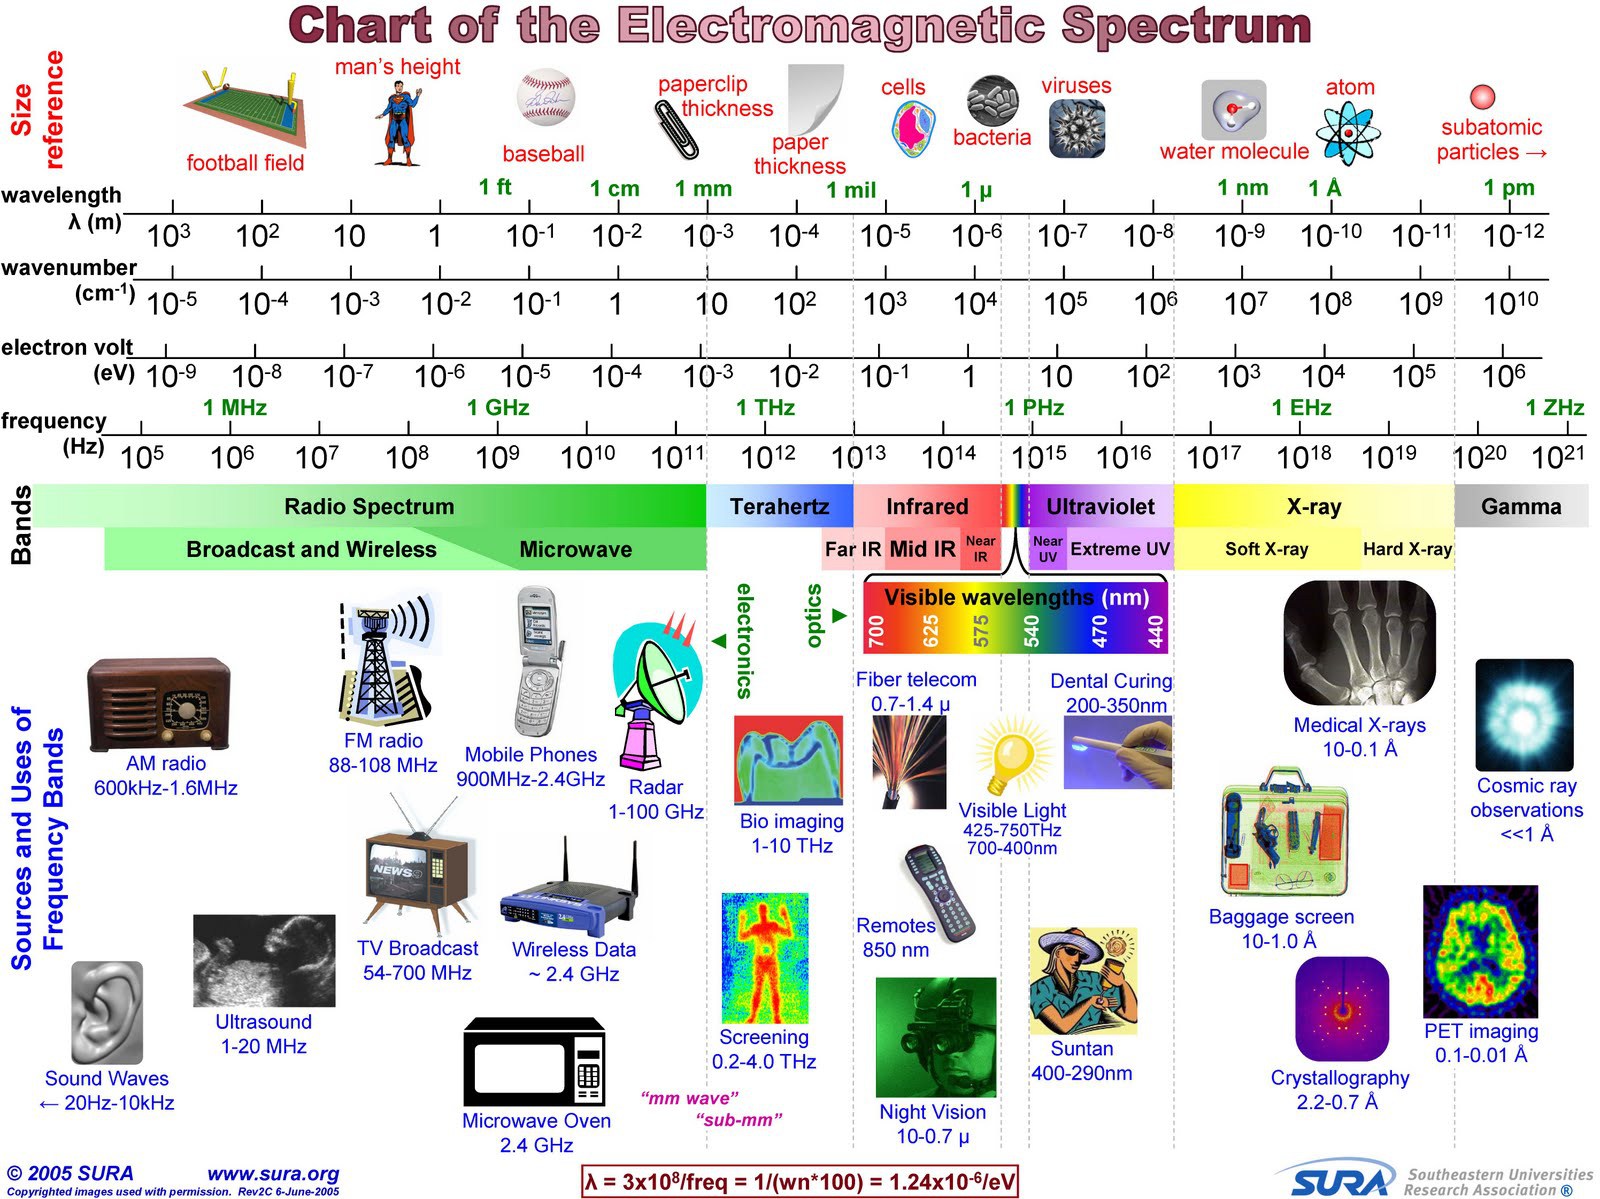 Electromagnetic spectrum full chart.jpg